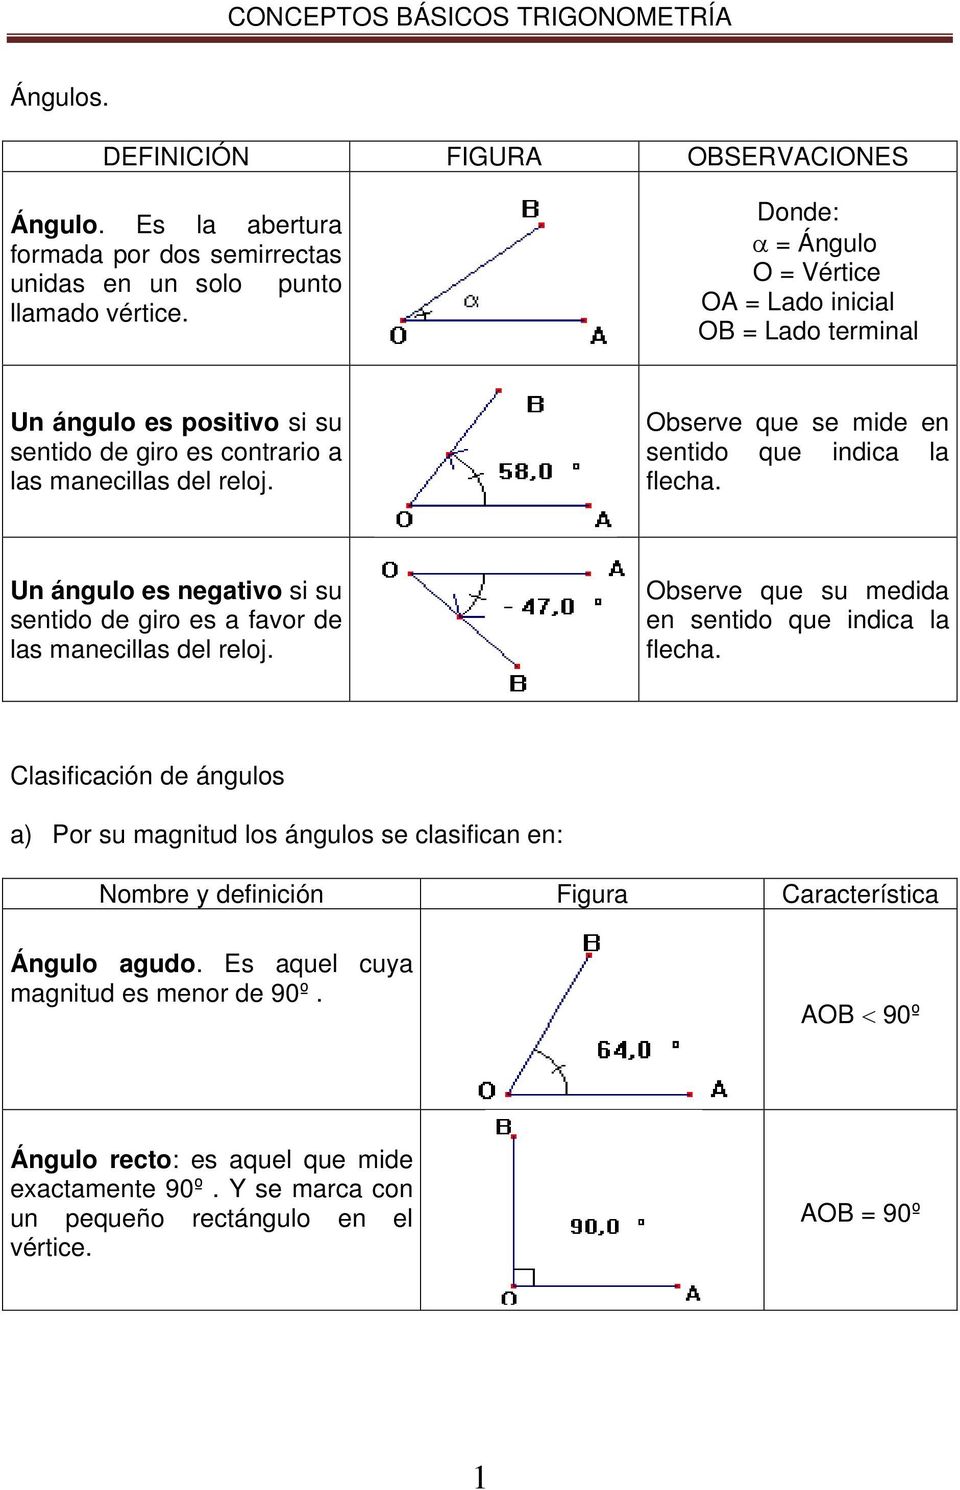 conceptos basicos de trigonometria y preguntas de practica en la seccion de matematicas de act